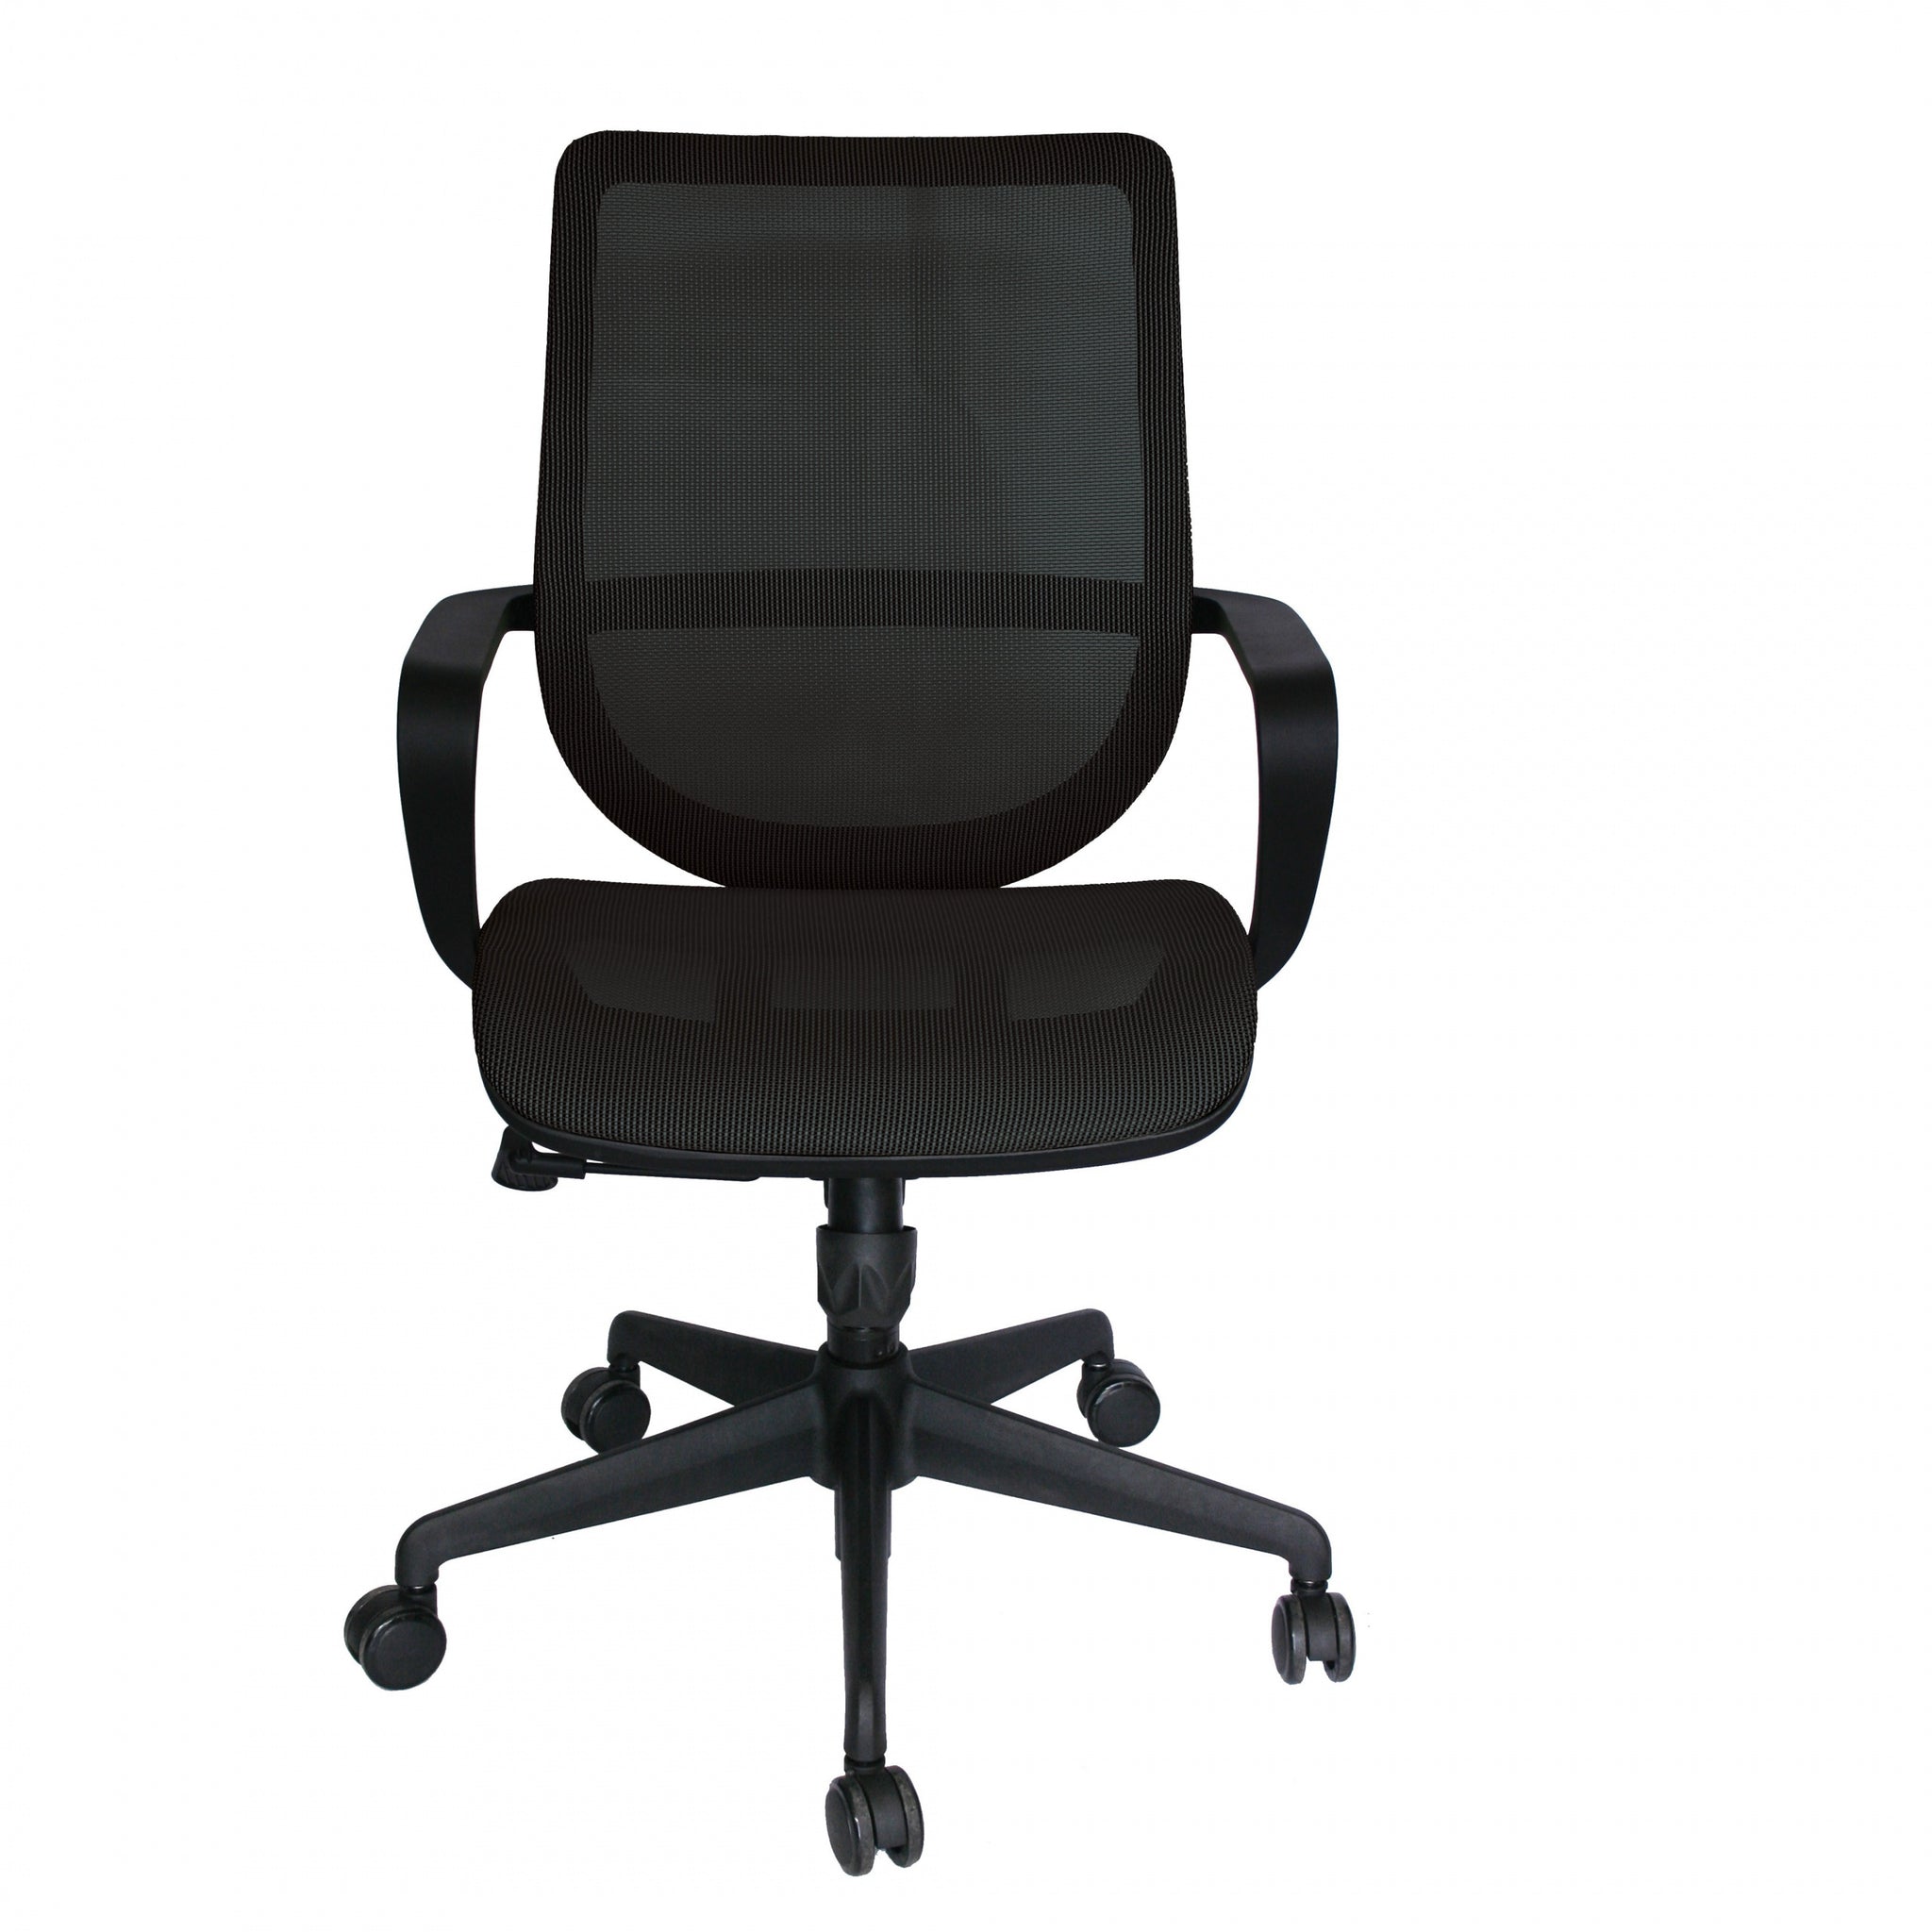 Sillón operativo Evolution OHE-99 respaldo y asiento tapizado en malla negro con base nylon